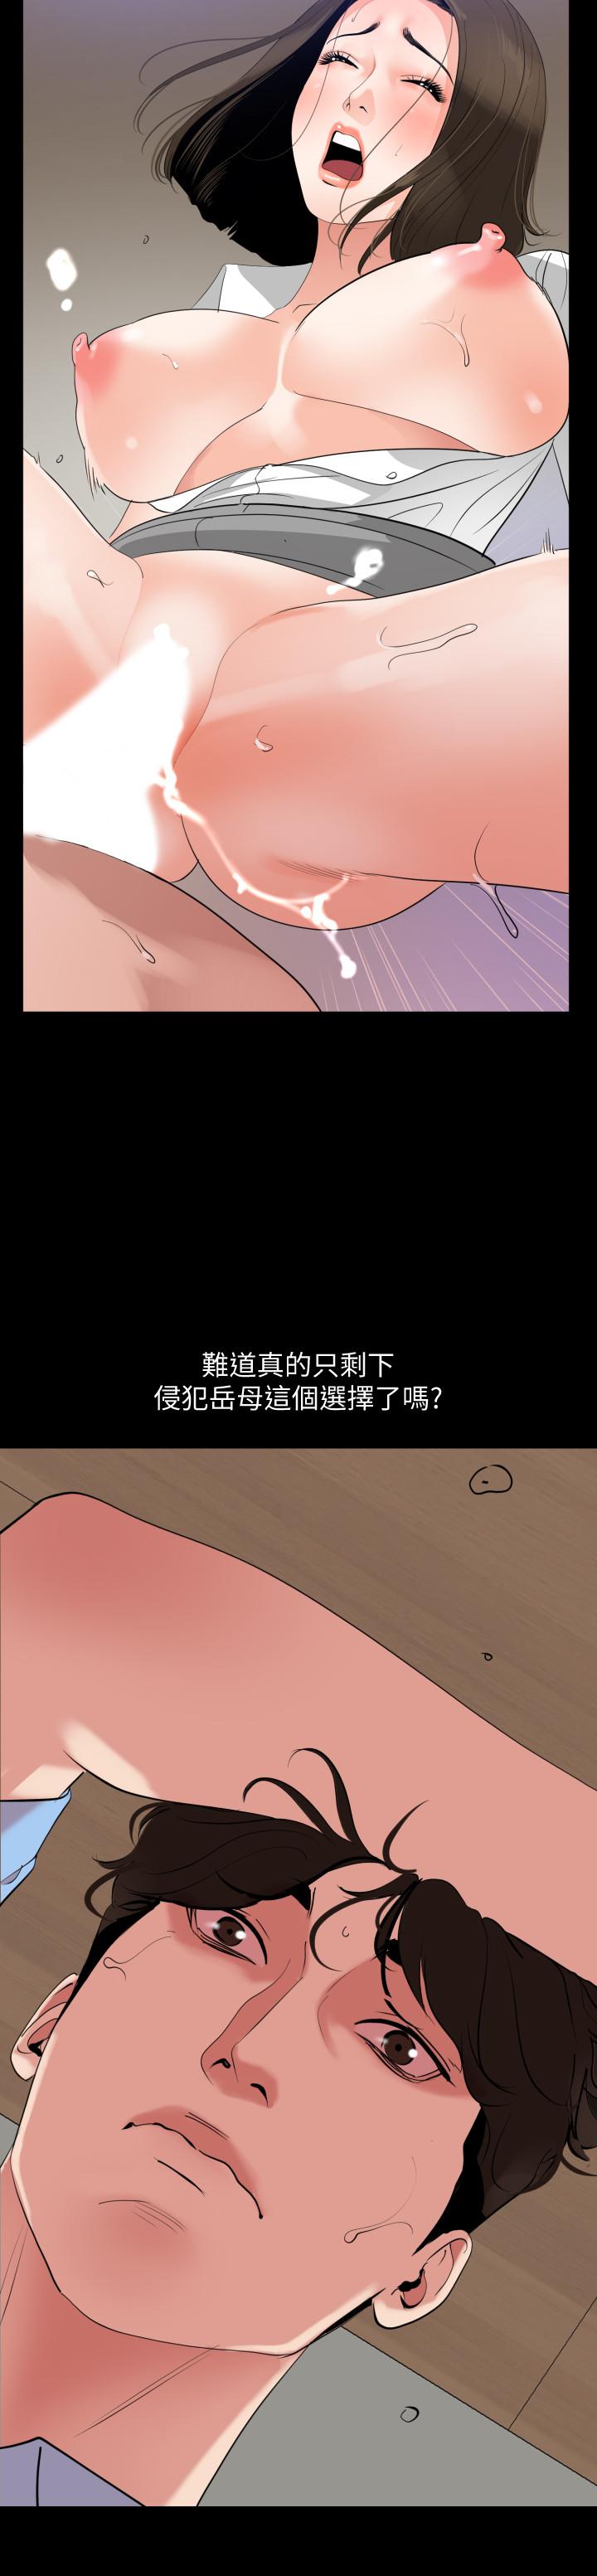 韩国污漫画 與嶽母同屋 第20话-排解不了的欲望 19